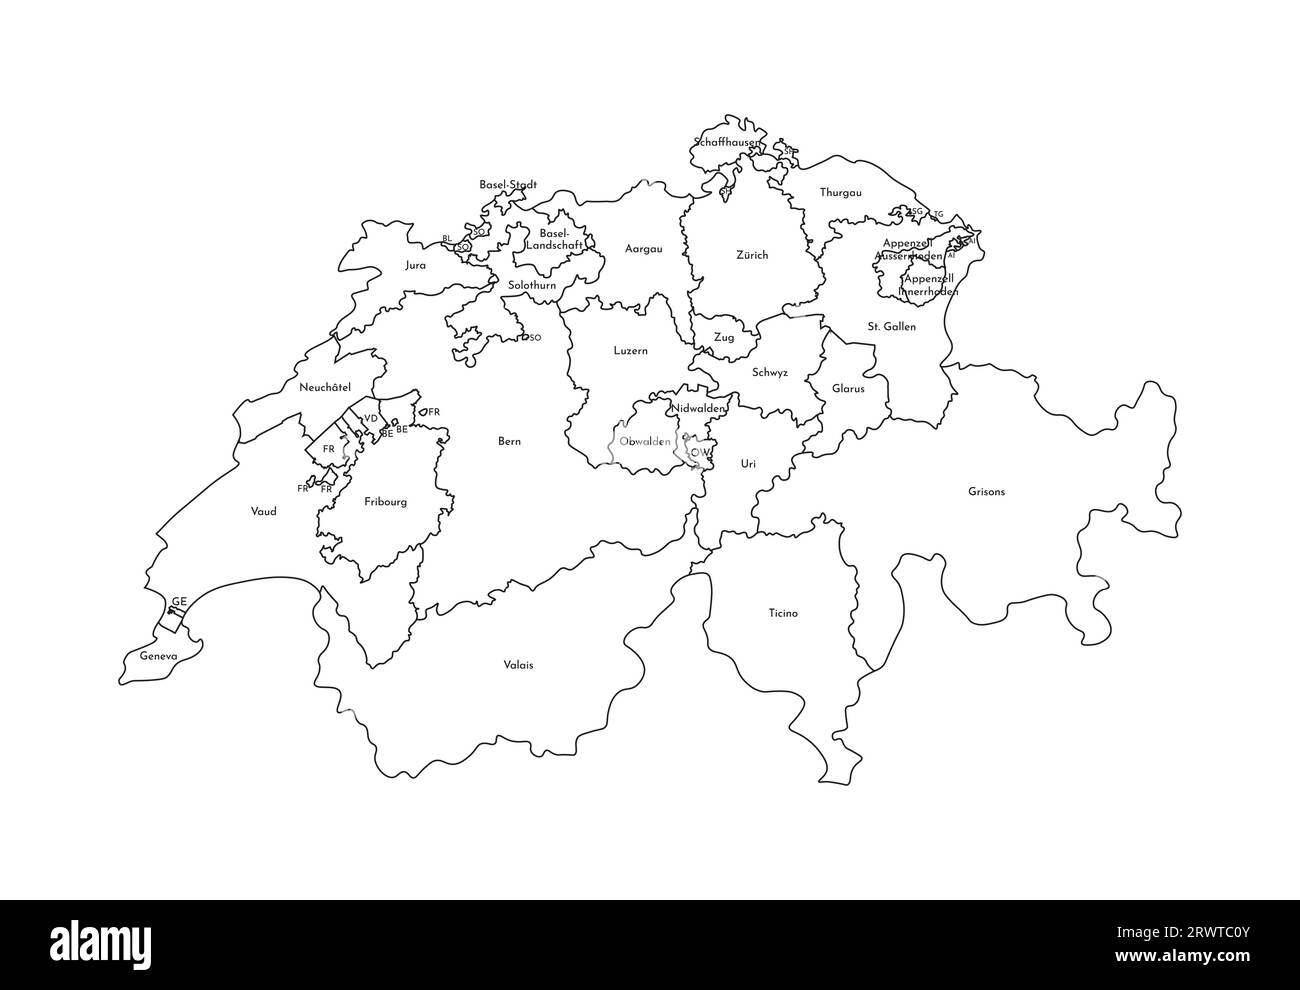 Vektorisolierte Darstellung einer vereinfachten Verwaltungskarte der Schweiz. Grenzen und Namen der Regionen. Silhouetten mit schwarzen Linien. Stock Vektor